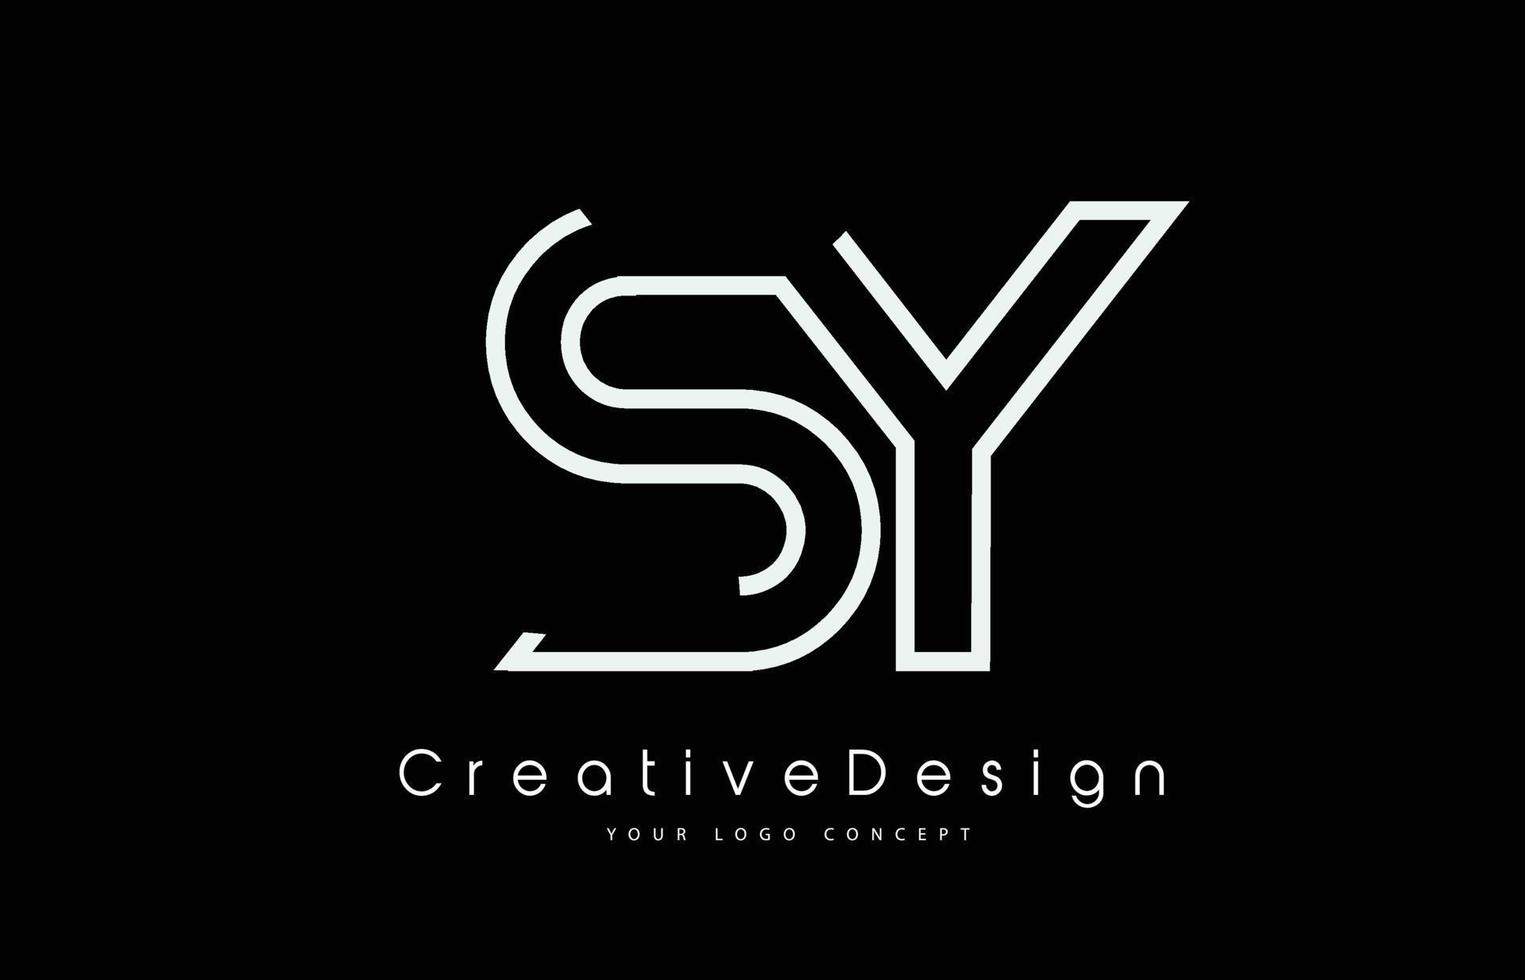 design de logotipo de carta sy sy nas cores brancas. vetor